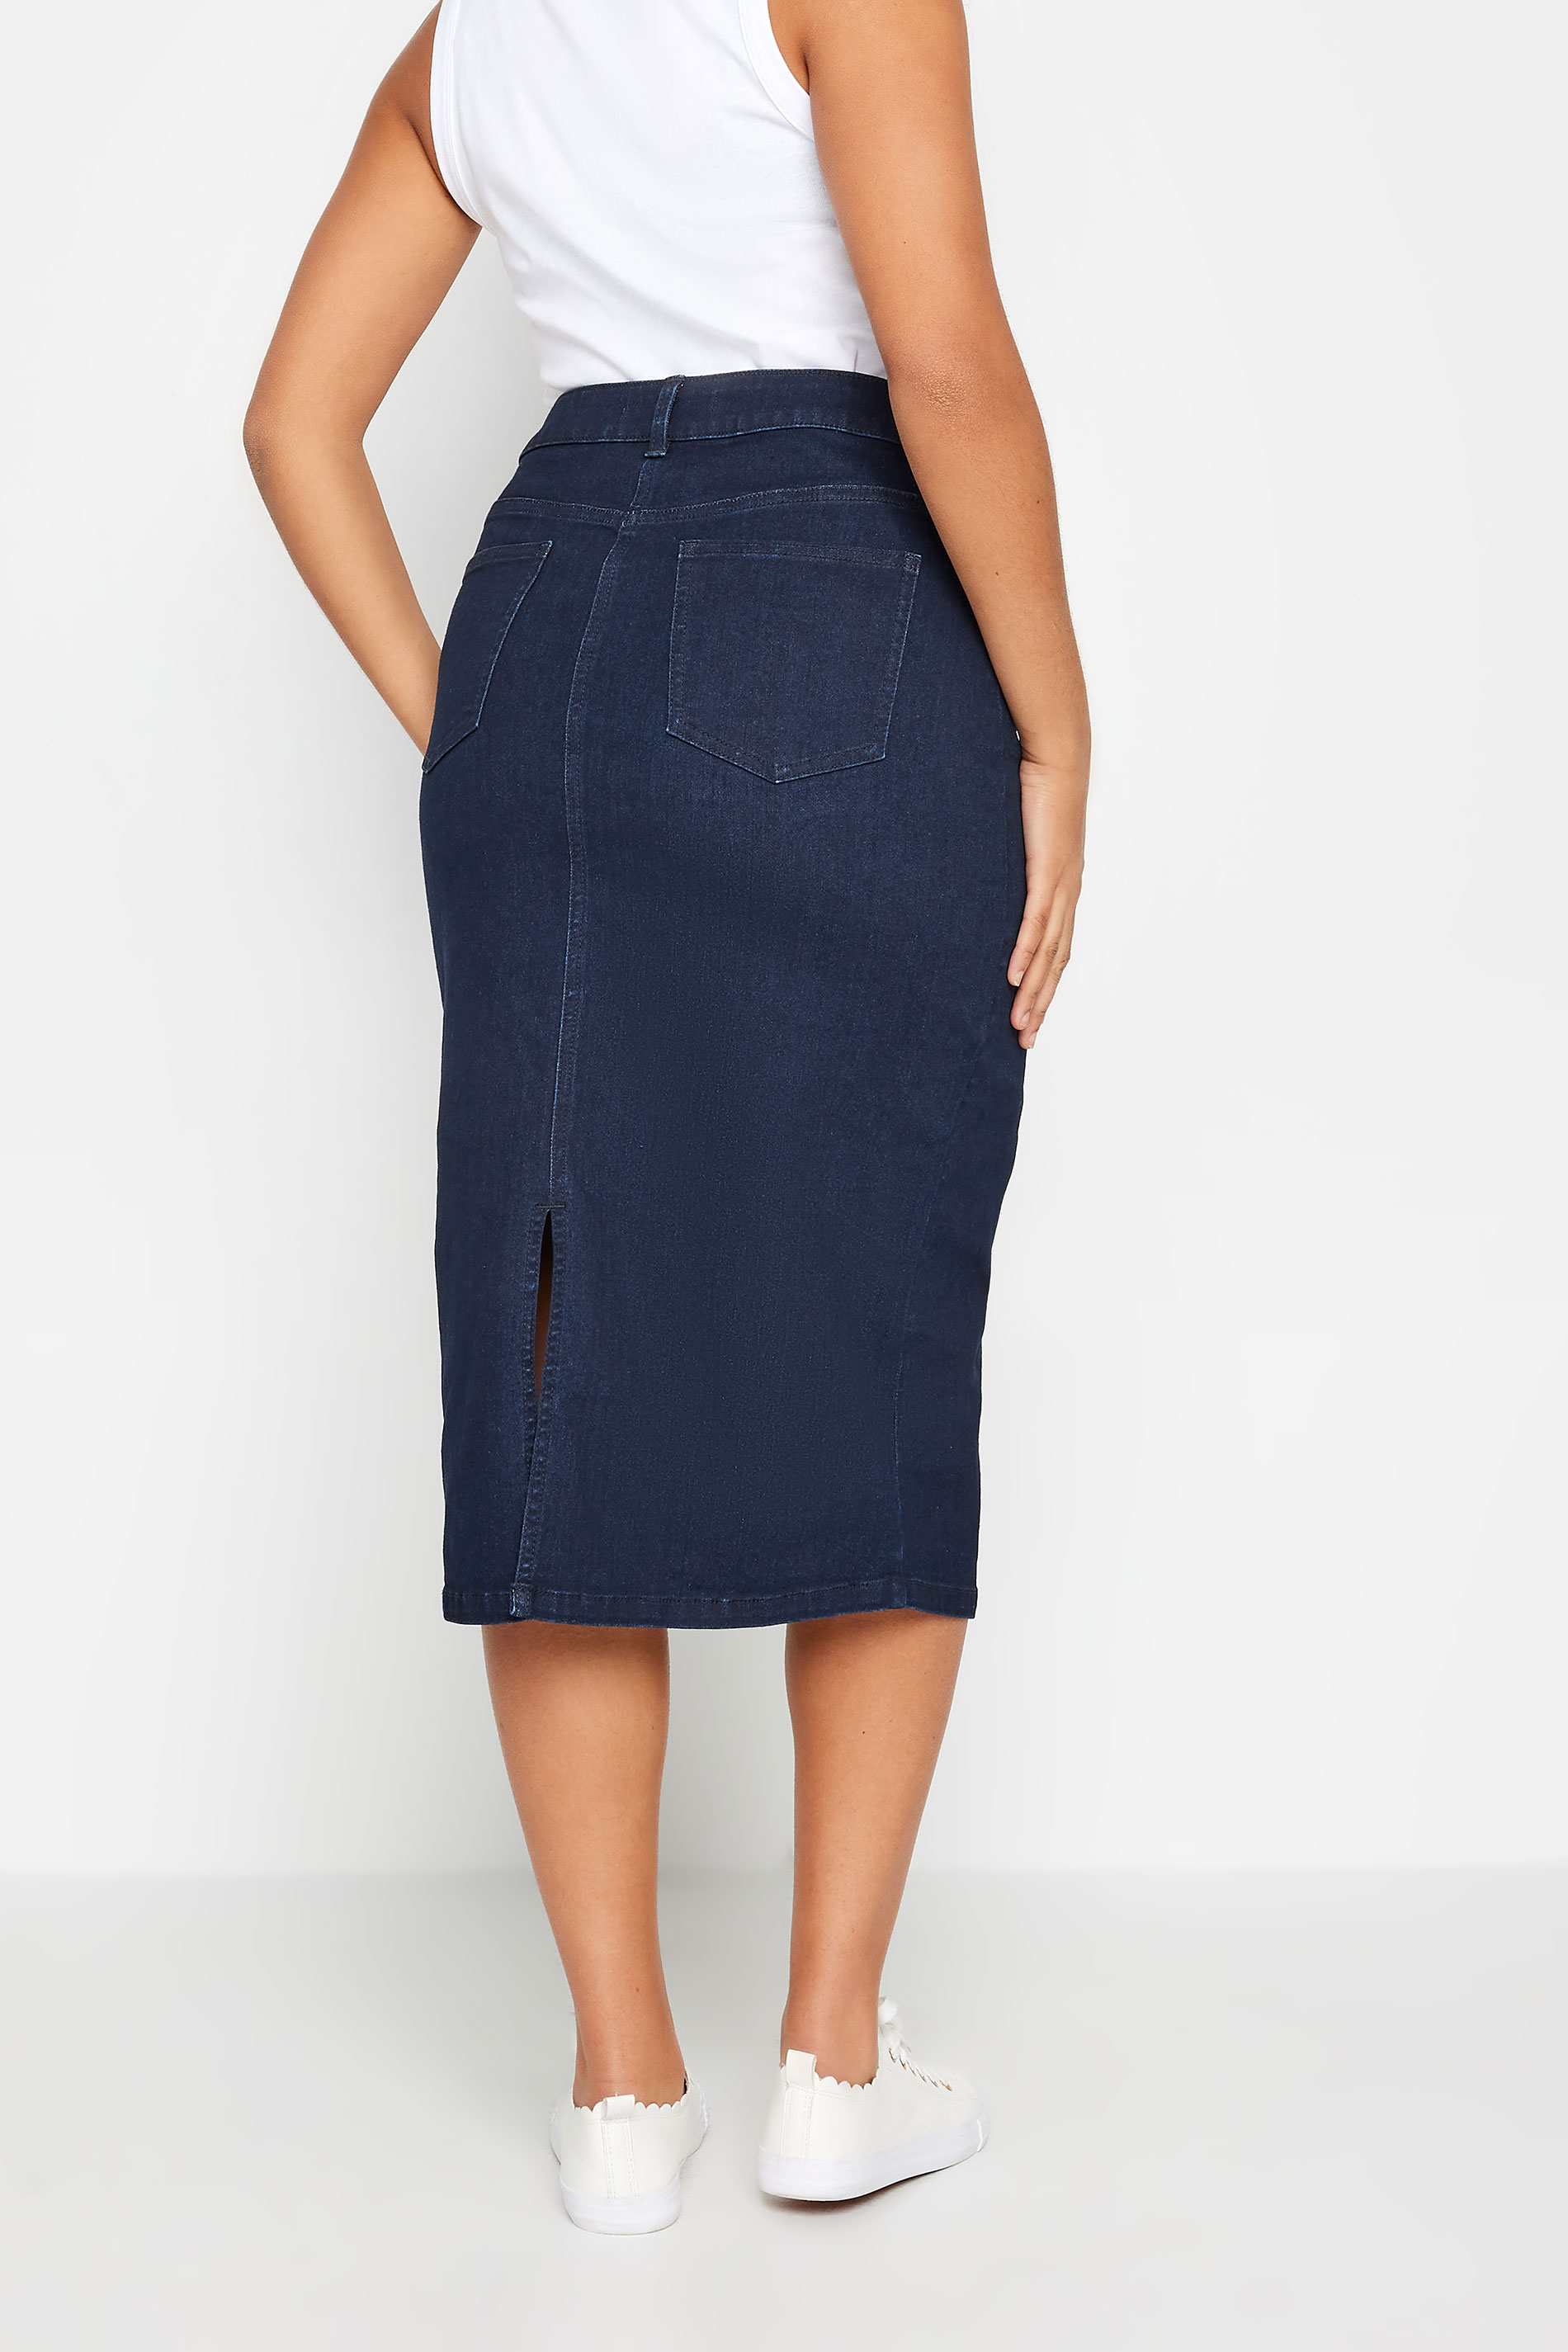 M&Co Indigo Blue Dark Wash Denim Midi Skirt | M&Co 3